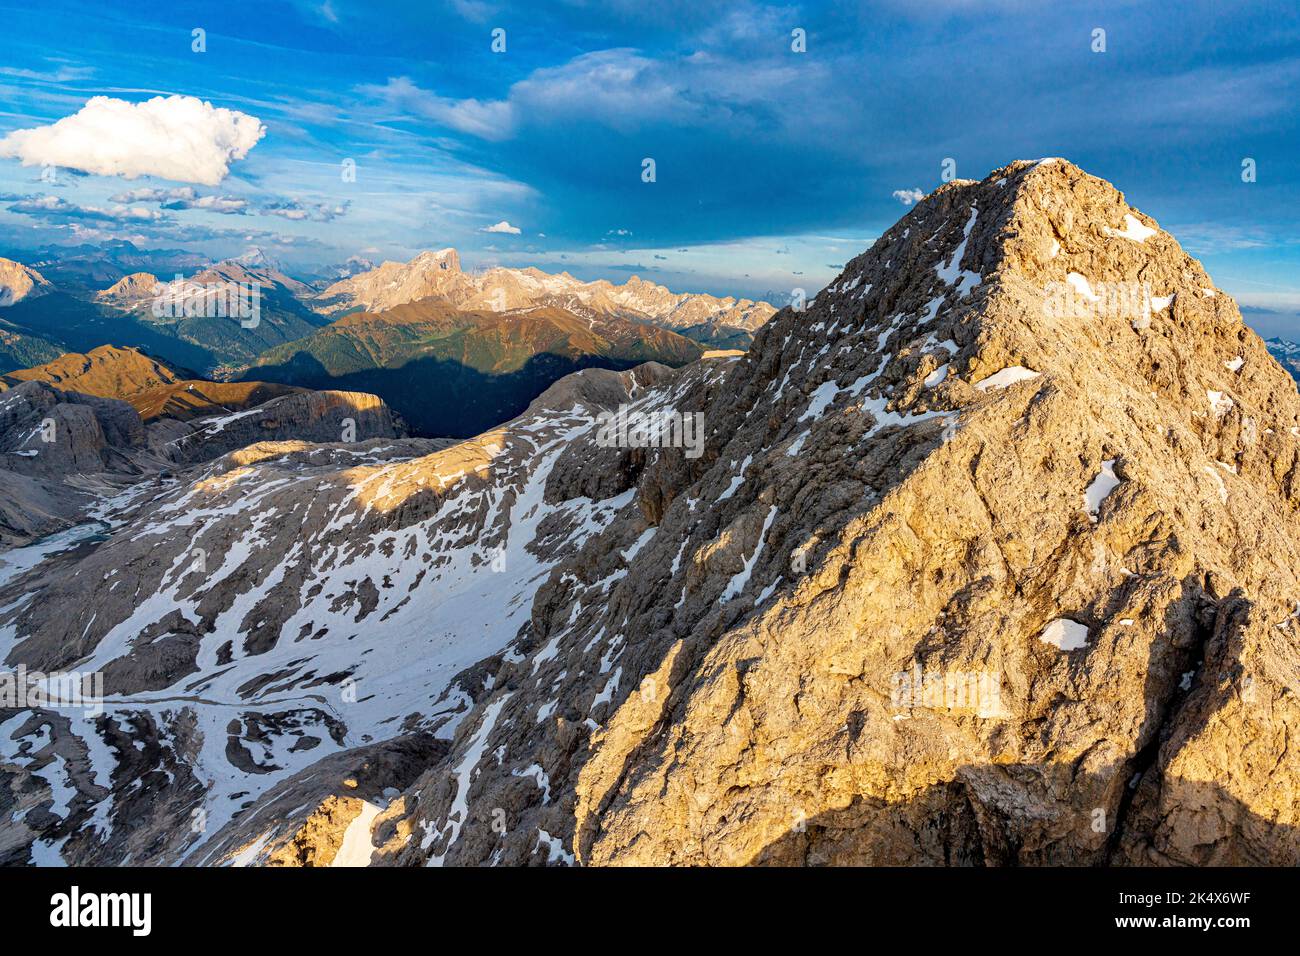 Maestose rocce del Catinaccio d'Antermoia al tramonto, vista aerea, Dolomiti, Alto Adige, Italia Foto Stock